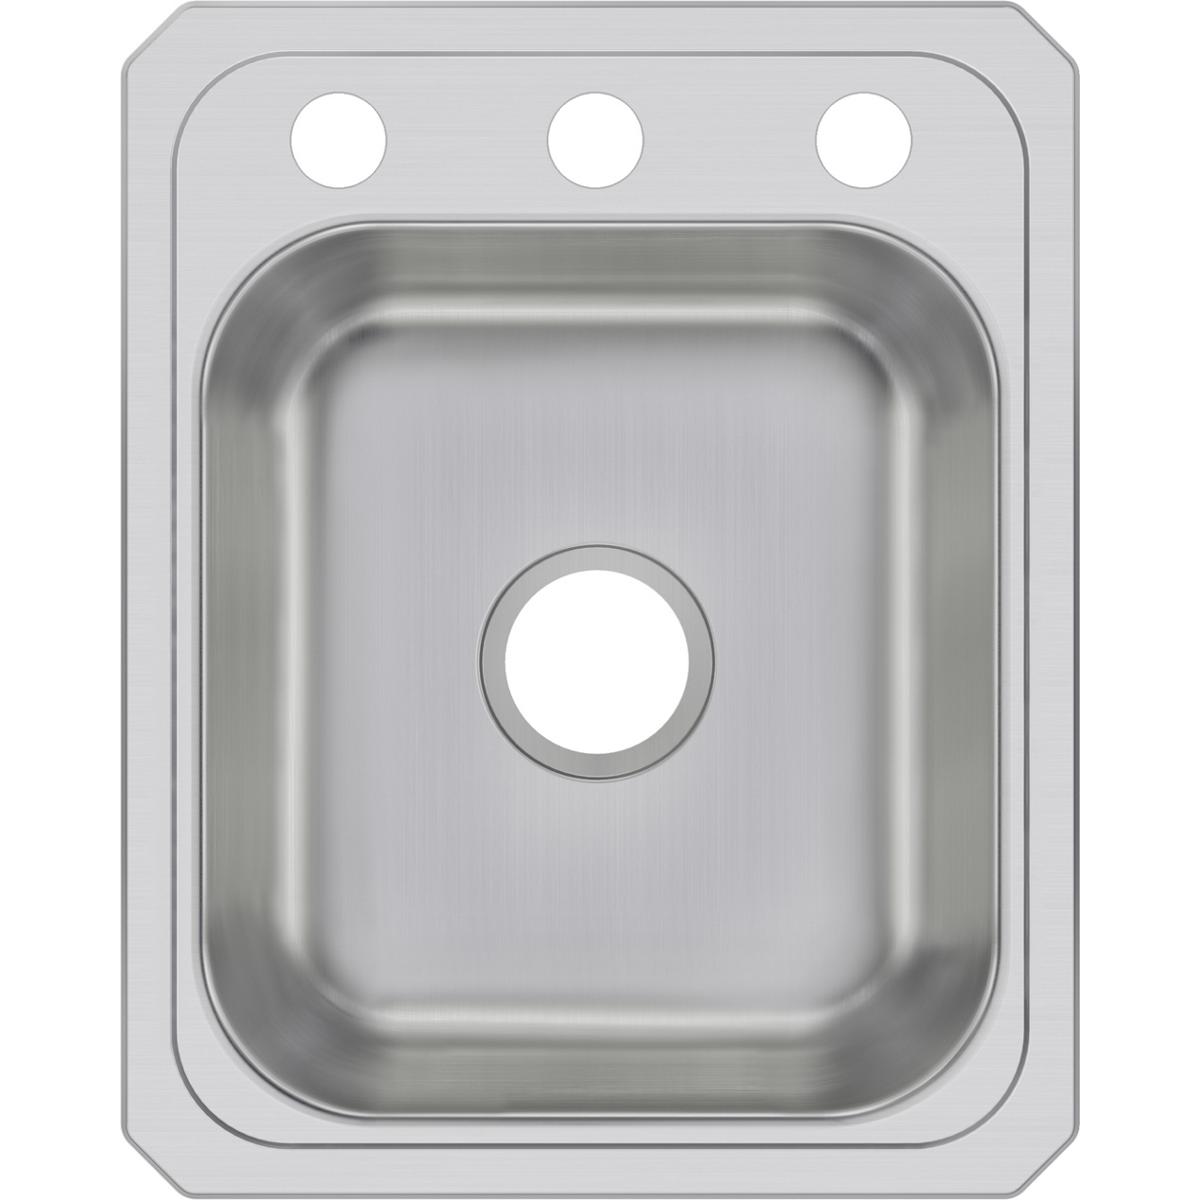 Elkay Celebrity Stainless Steel 17" x 21-1/4" x 6-7/8" Single Bowl Drop-in Sink